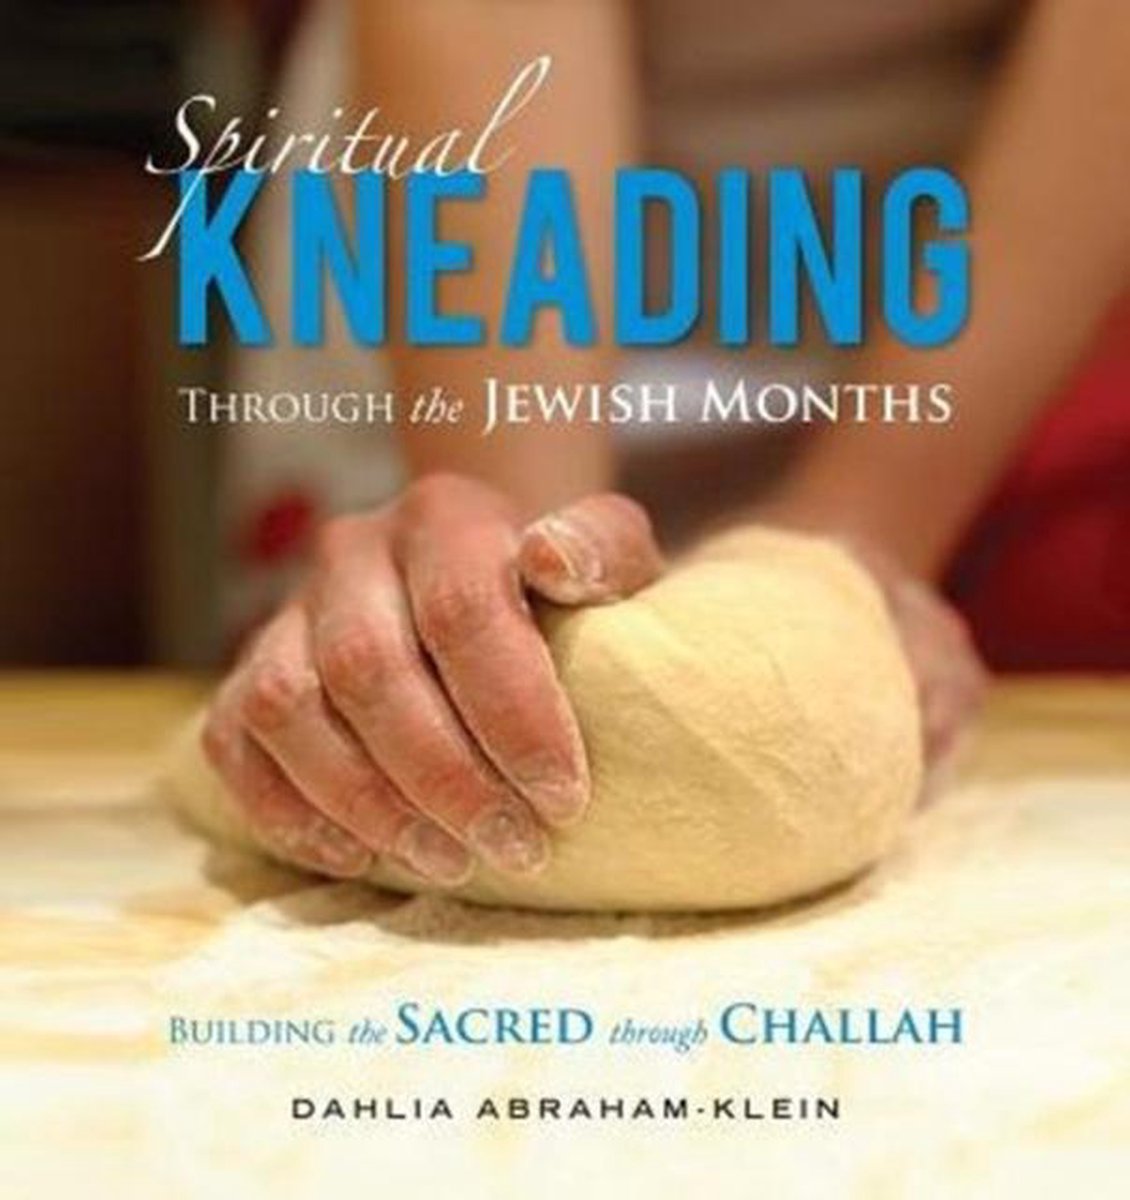 Spiritual Kneading through the Jewish Months - Dahlia Abraham-Klein